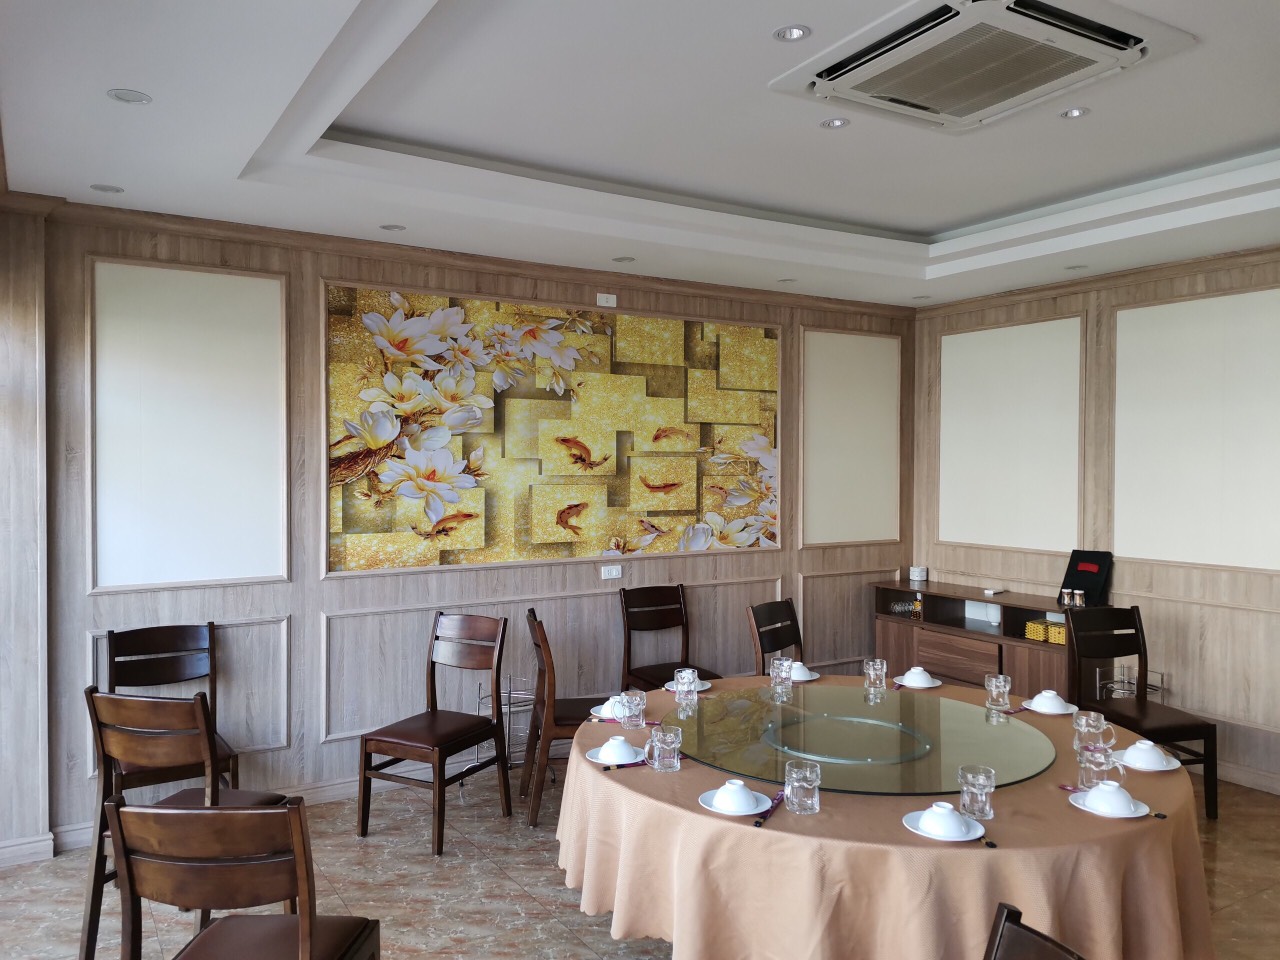 Tam op AnPro 2 - Thiết kế nội thất nhà hàng hiện đại với vân gỗ đẹp mắt